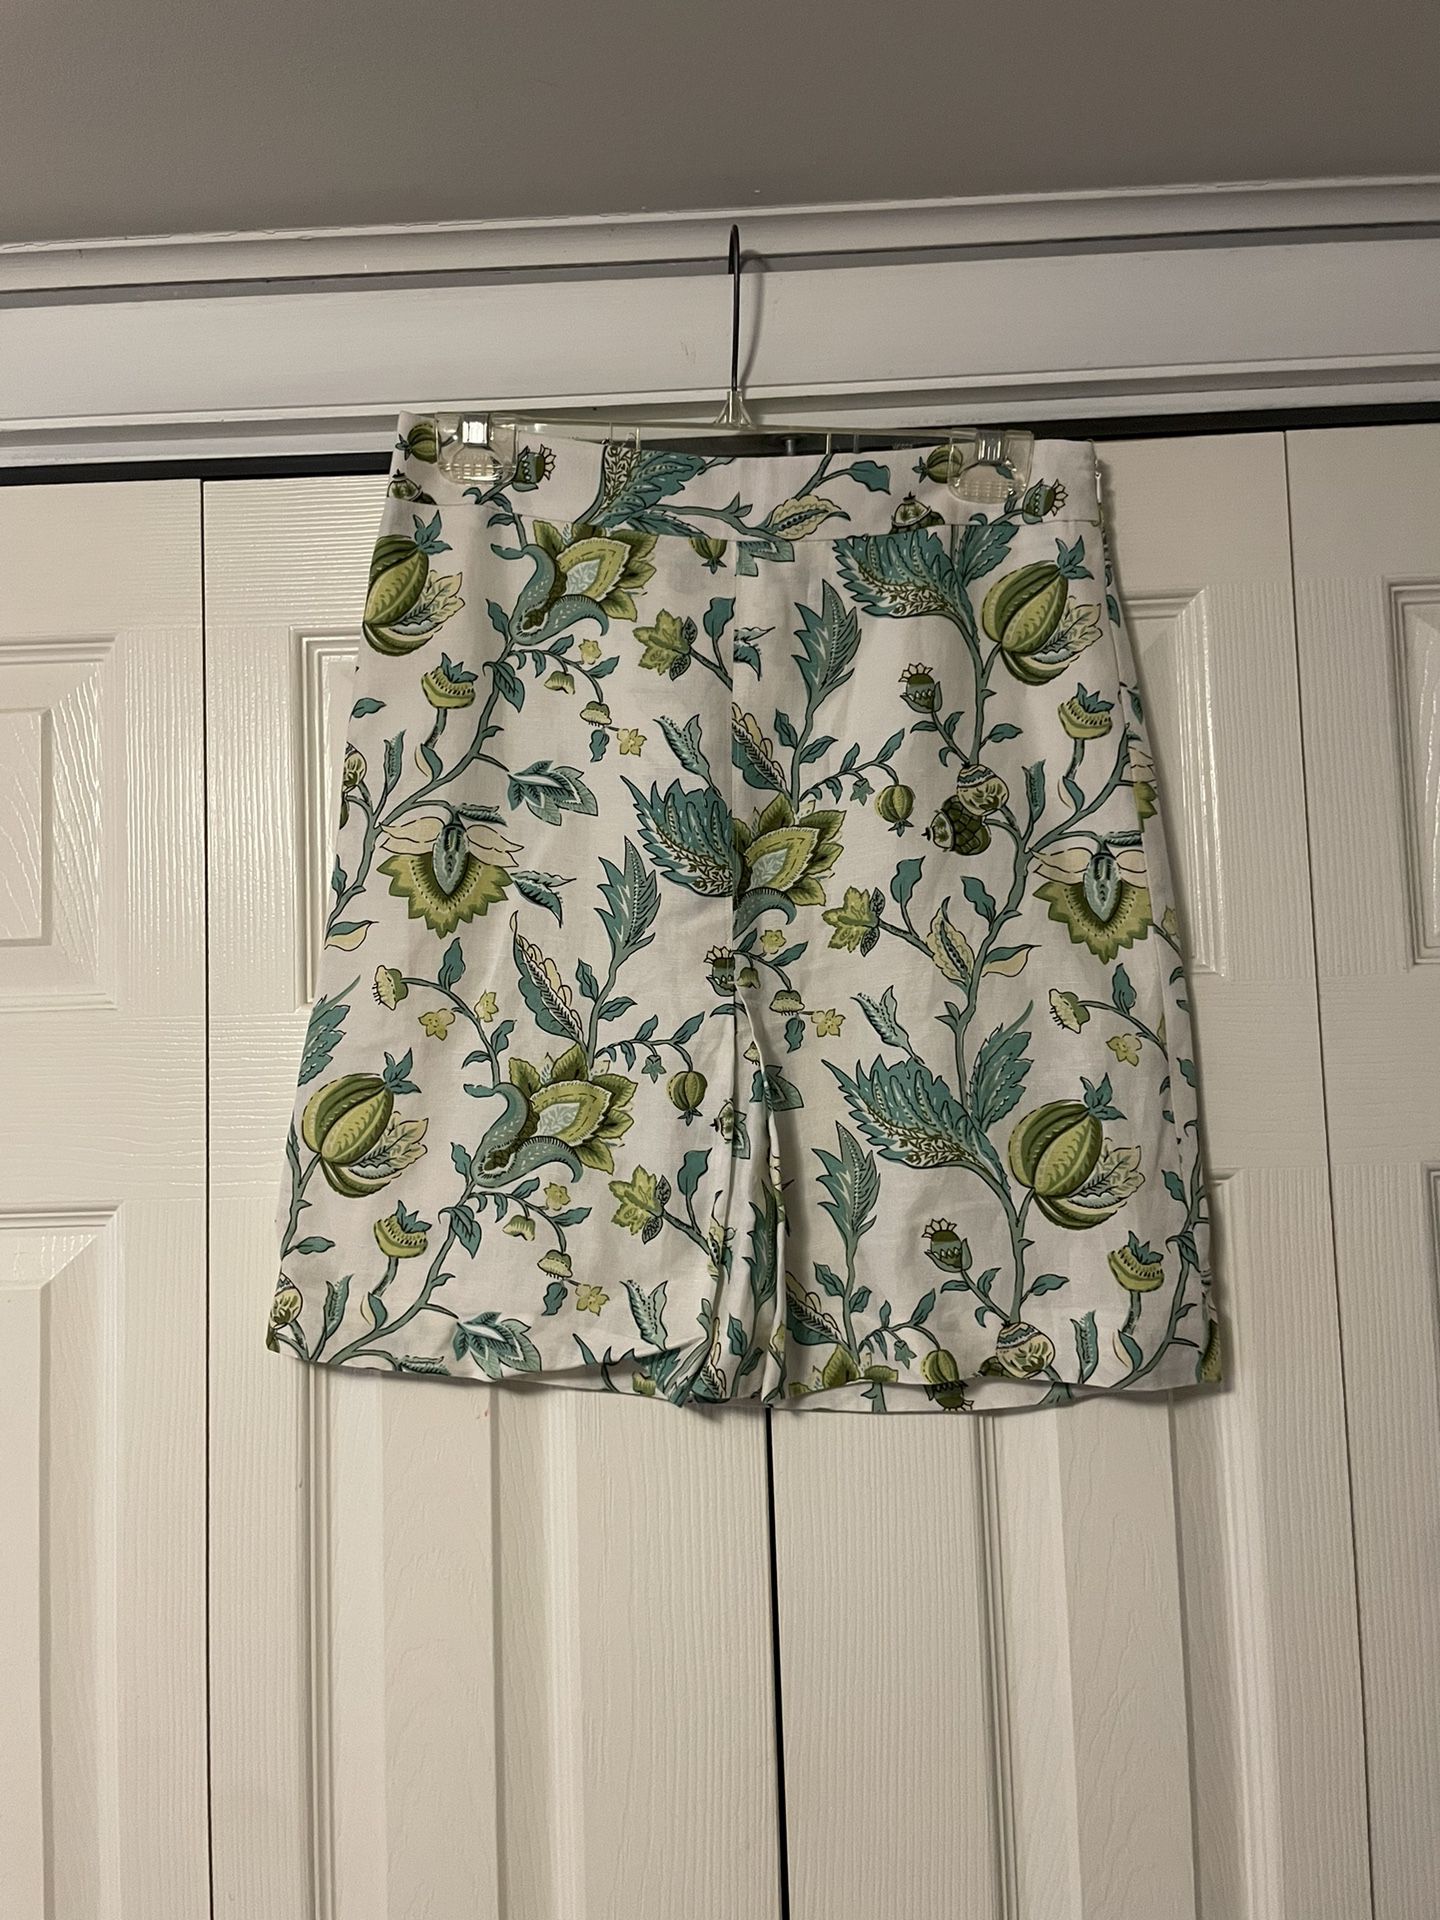 Loft White, Turquoise & Green Floral Linen Skirt - Size 2